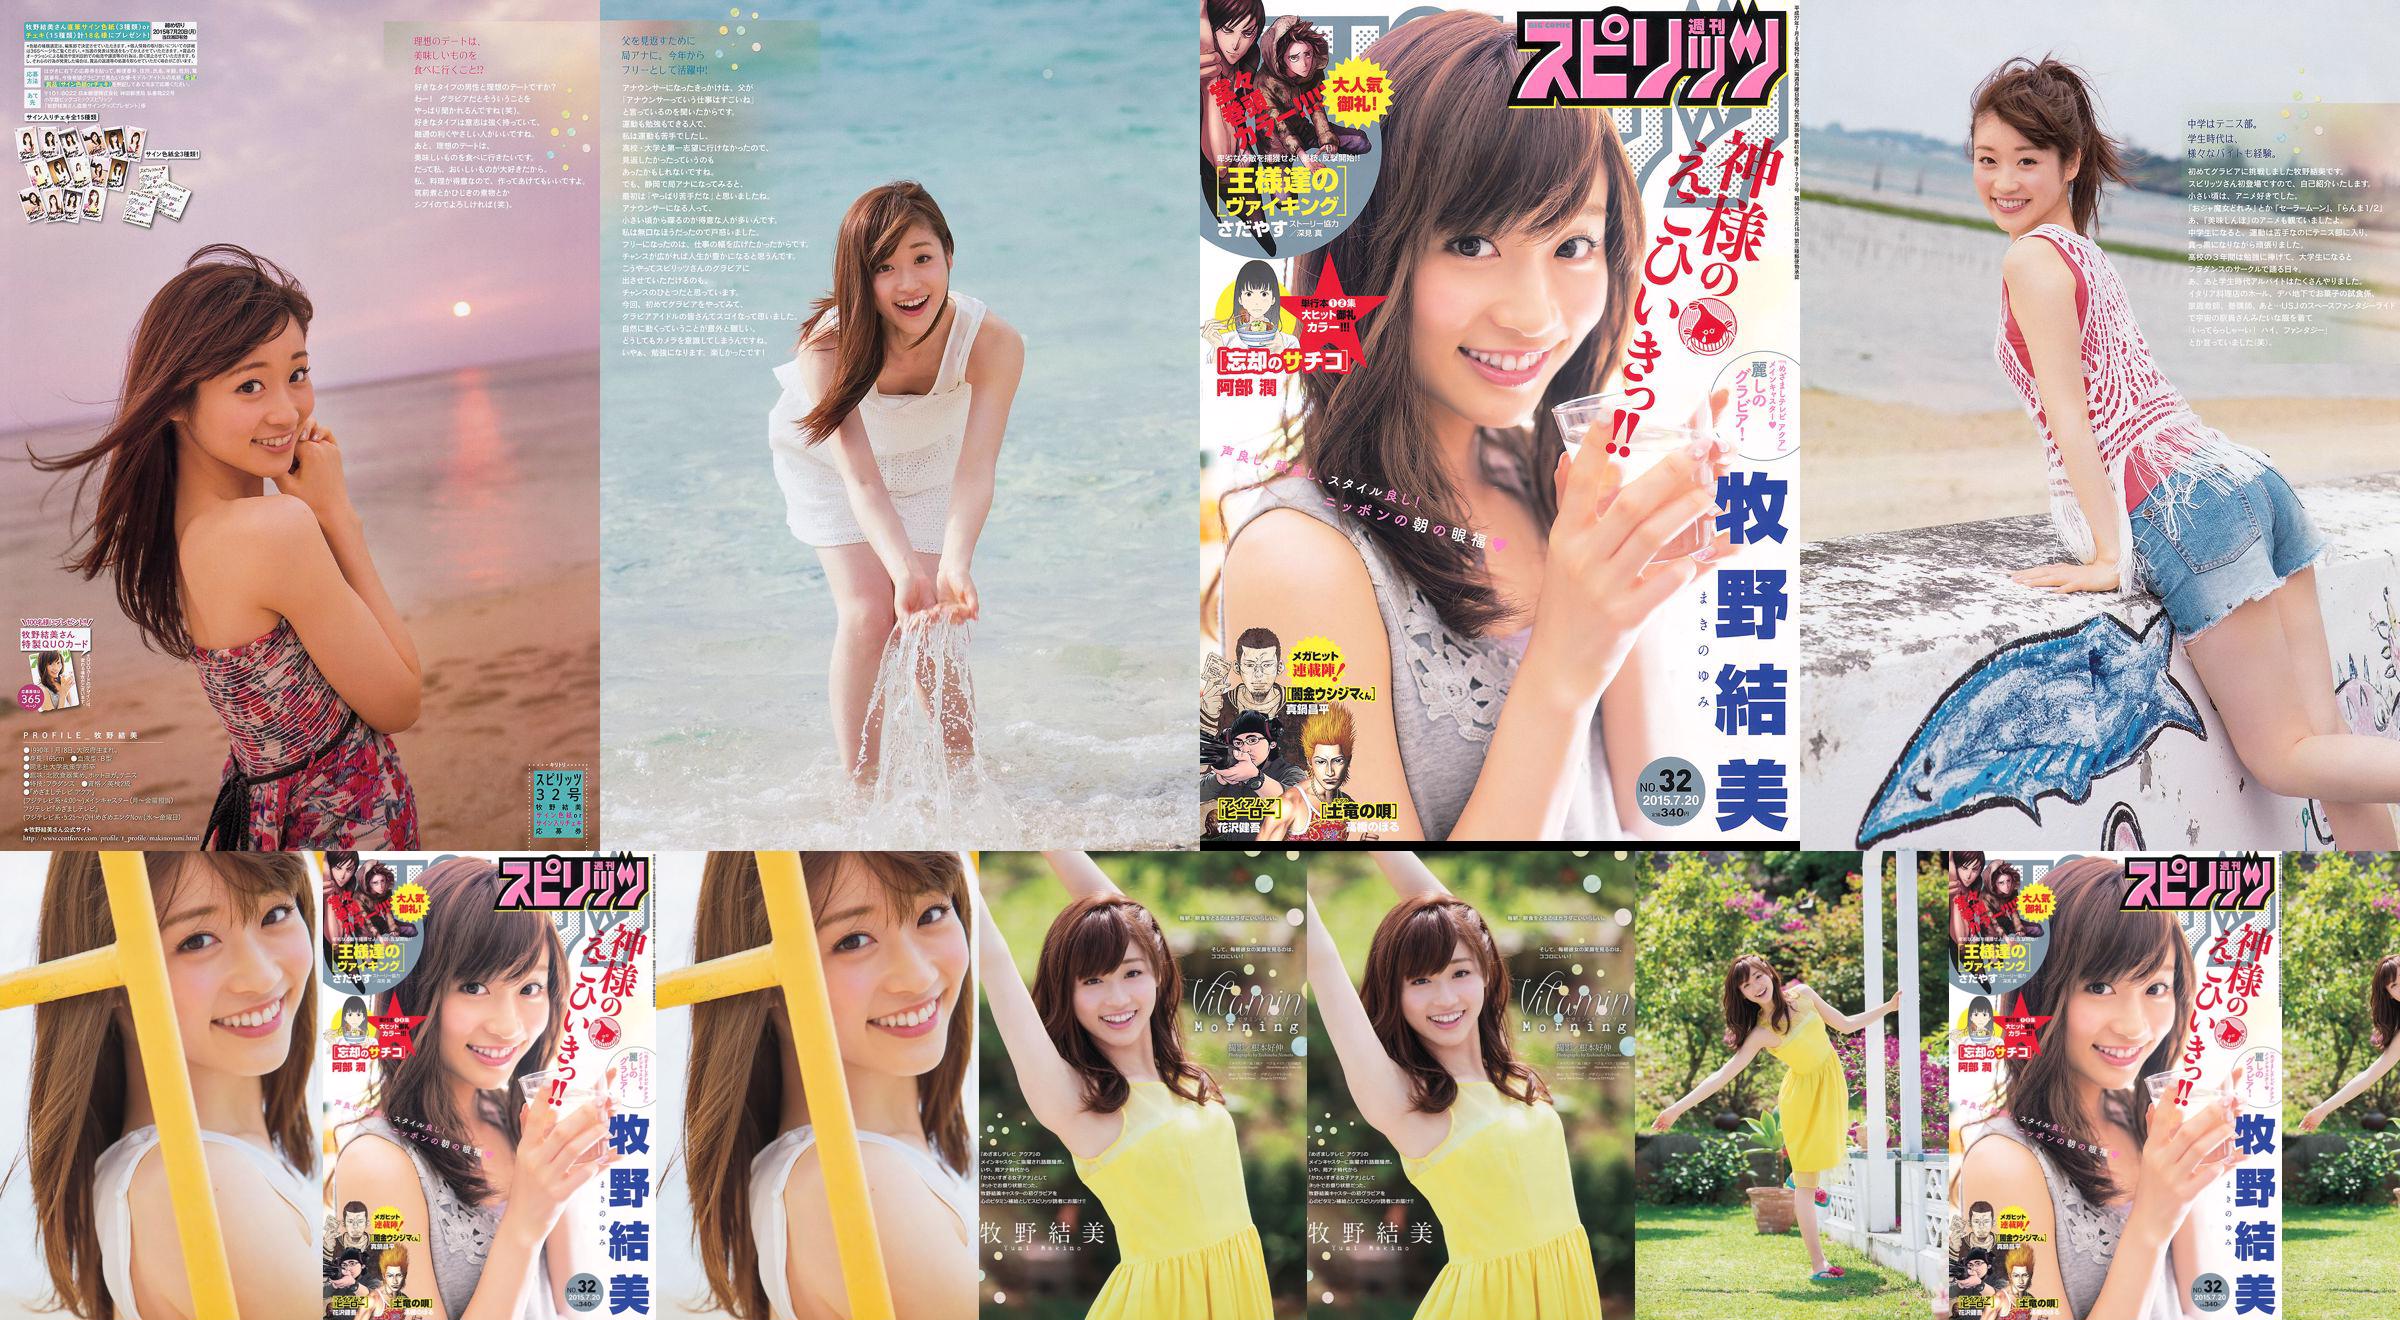 [Weekly Big Comic Spirits] Yumi Makino 2015 No.32 Photo Magazine No.9691b0 Página 4